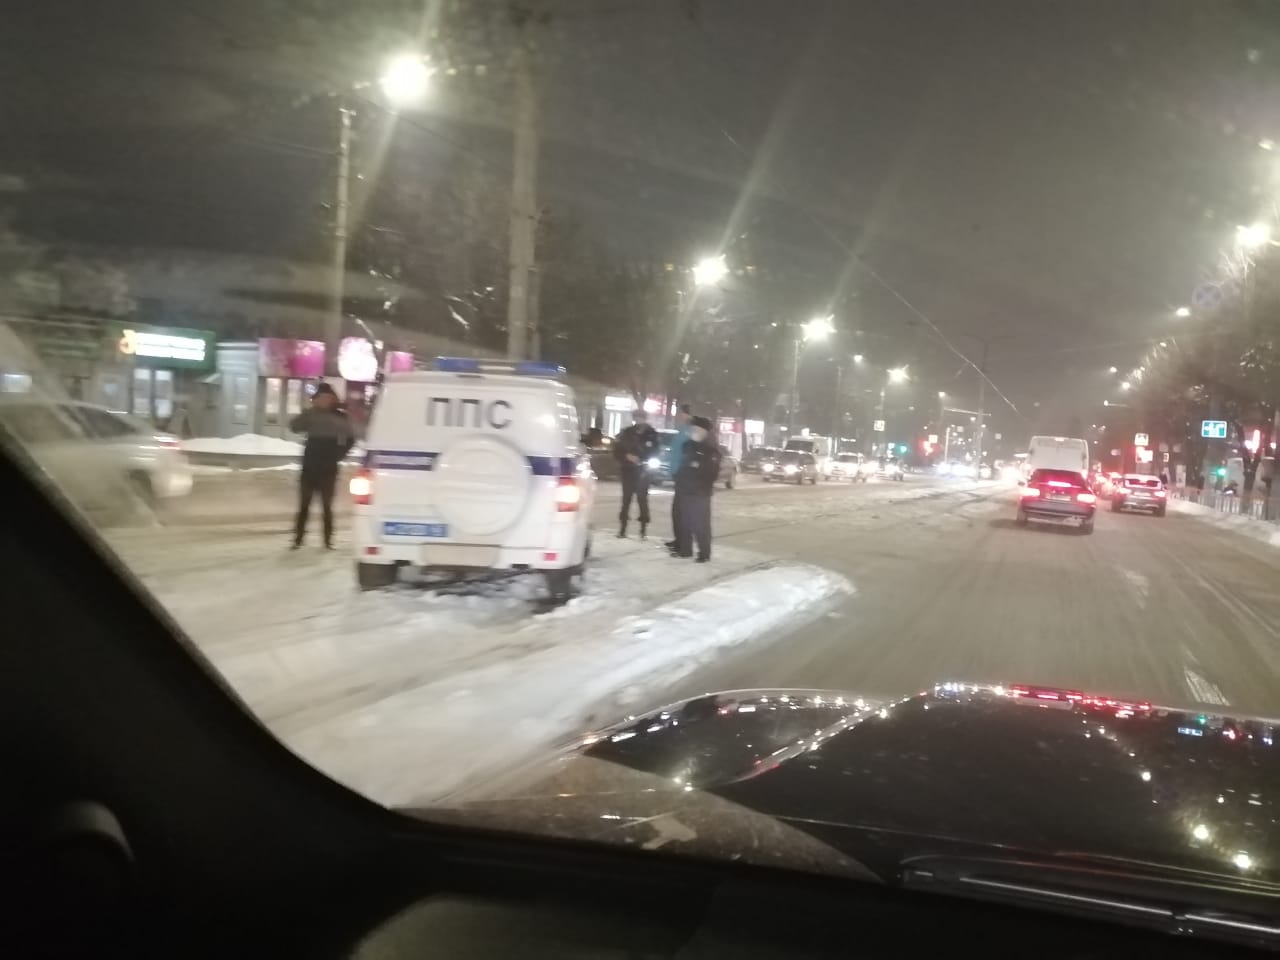 В Смоленска машина полиции протаранила столб и остановила движение трамваев